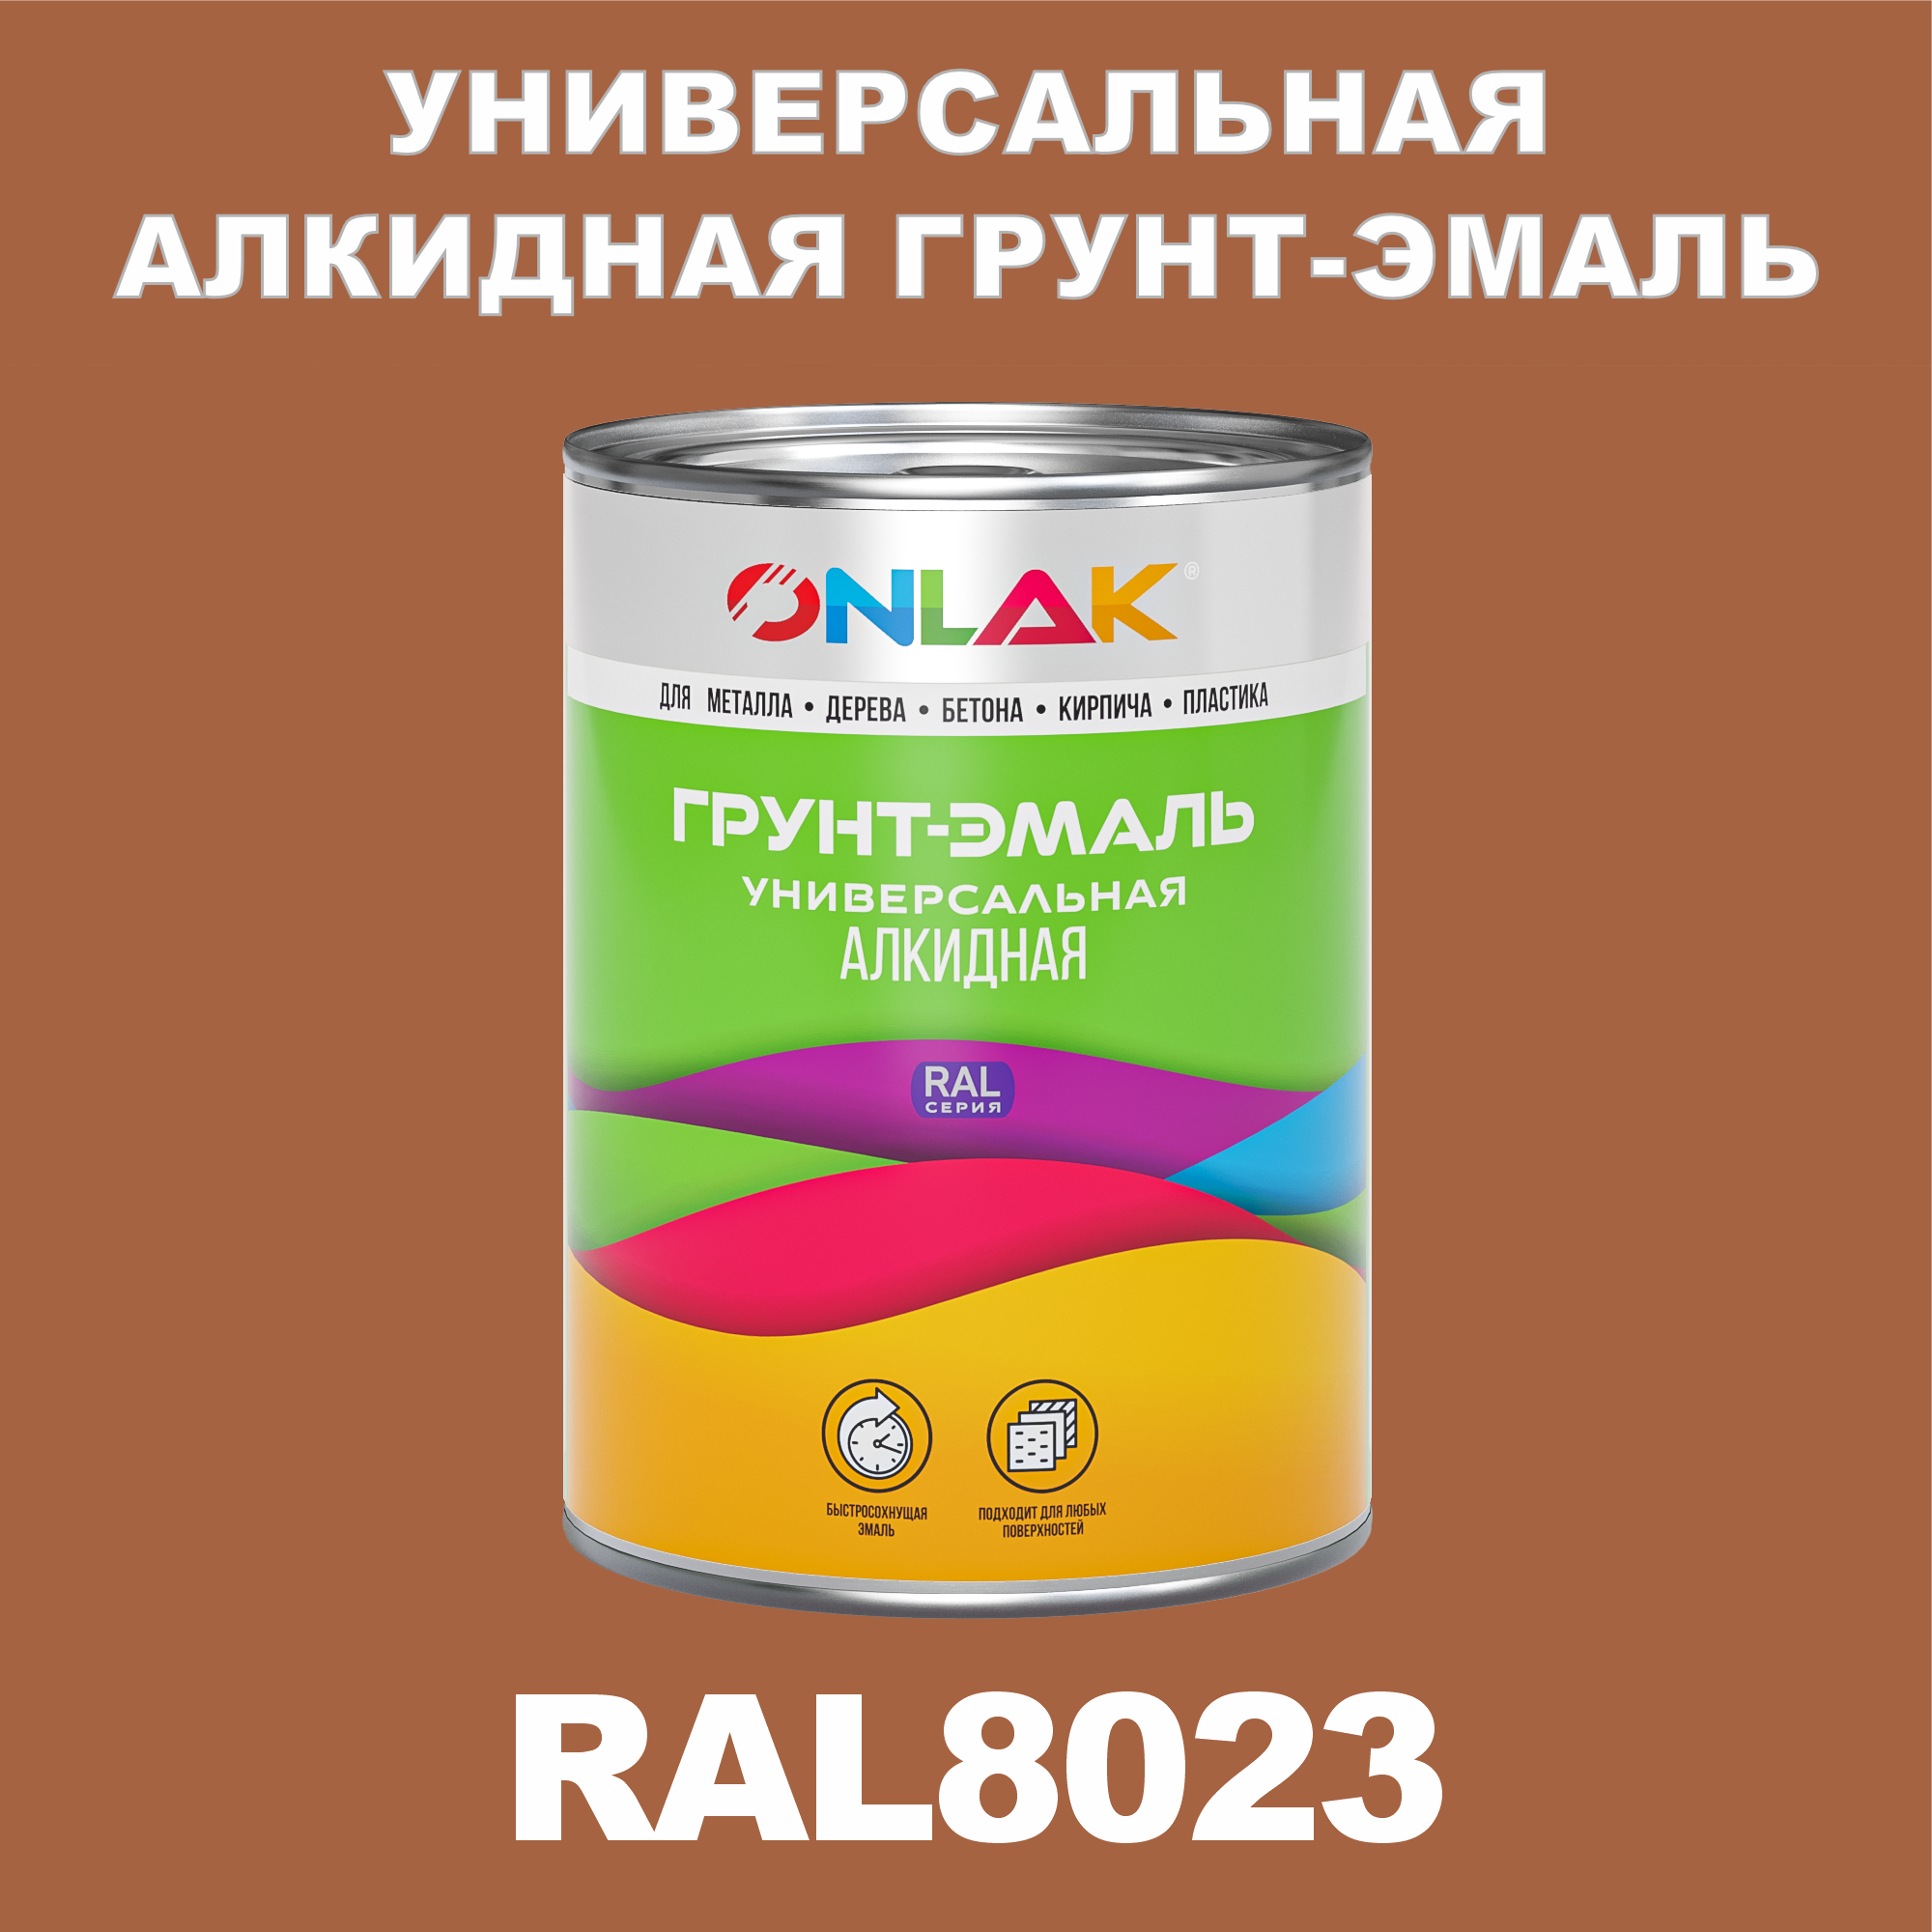 Грунт-эмаль ONLAK 1К RAL8023 антикоррозионная алкидная по металлу по ржавчине 1 кг грунт эмаль yollo по ржавчине алкидная зеленая 0 9 кг